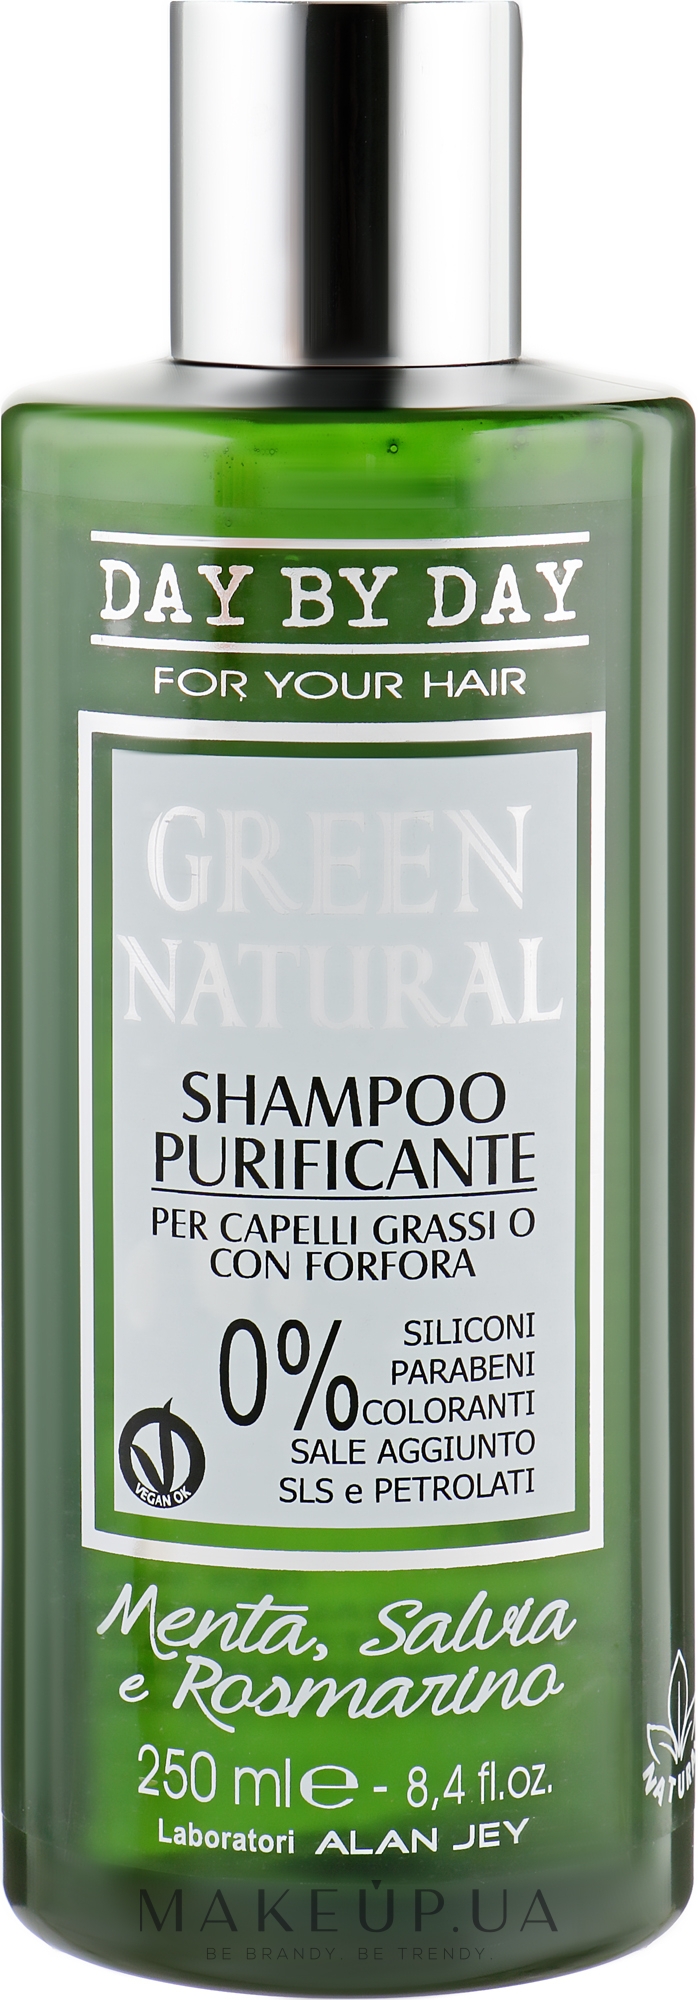 Шампунь очищувальний для жирного волосся і волосся з жирною лупою - Alan Jey Green Natural Shampoo — фото 250ml